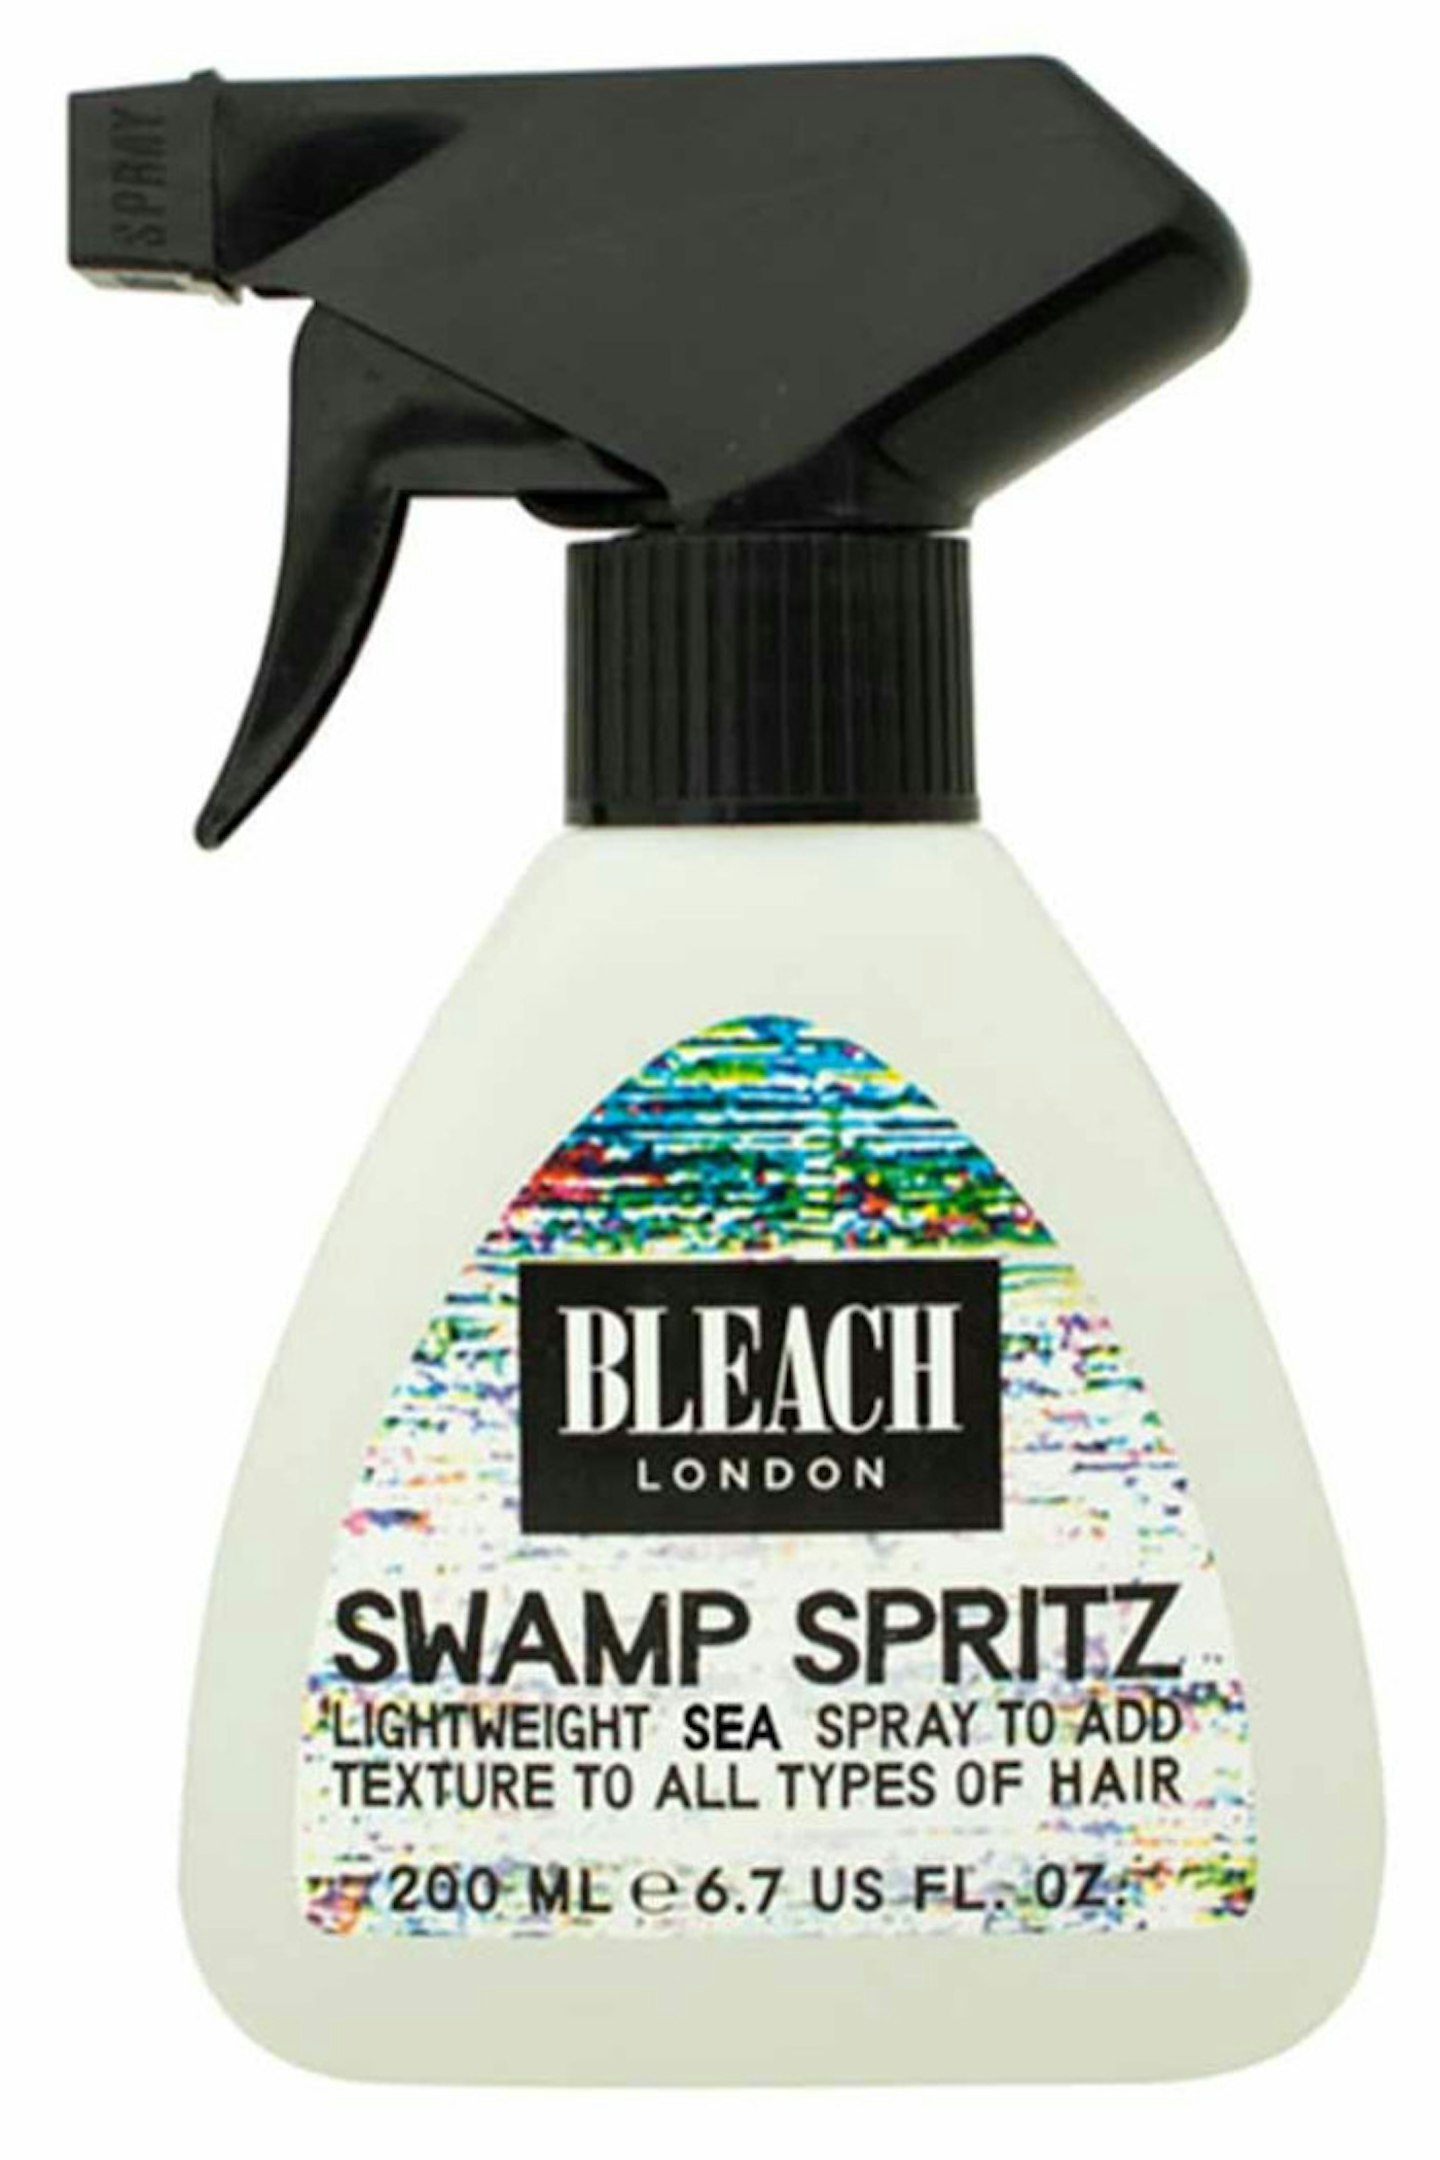 6. Bleach London Swamp Spritz, £6